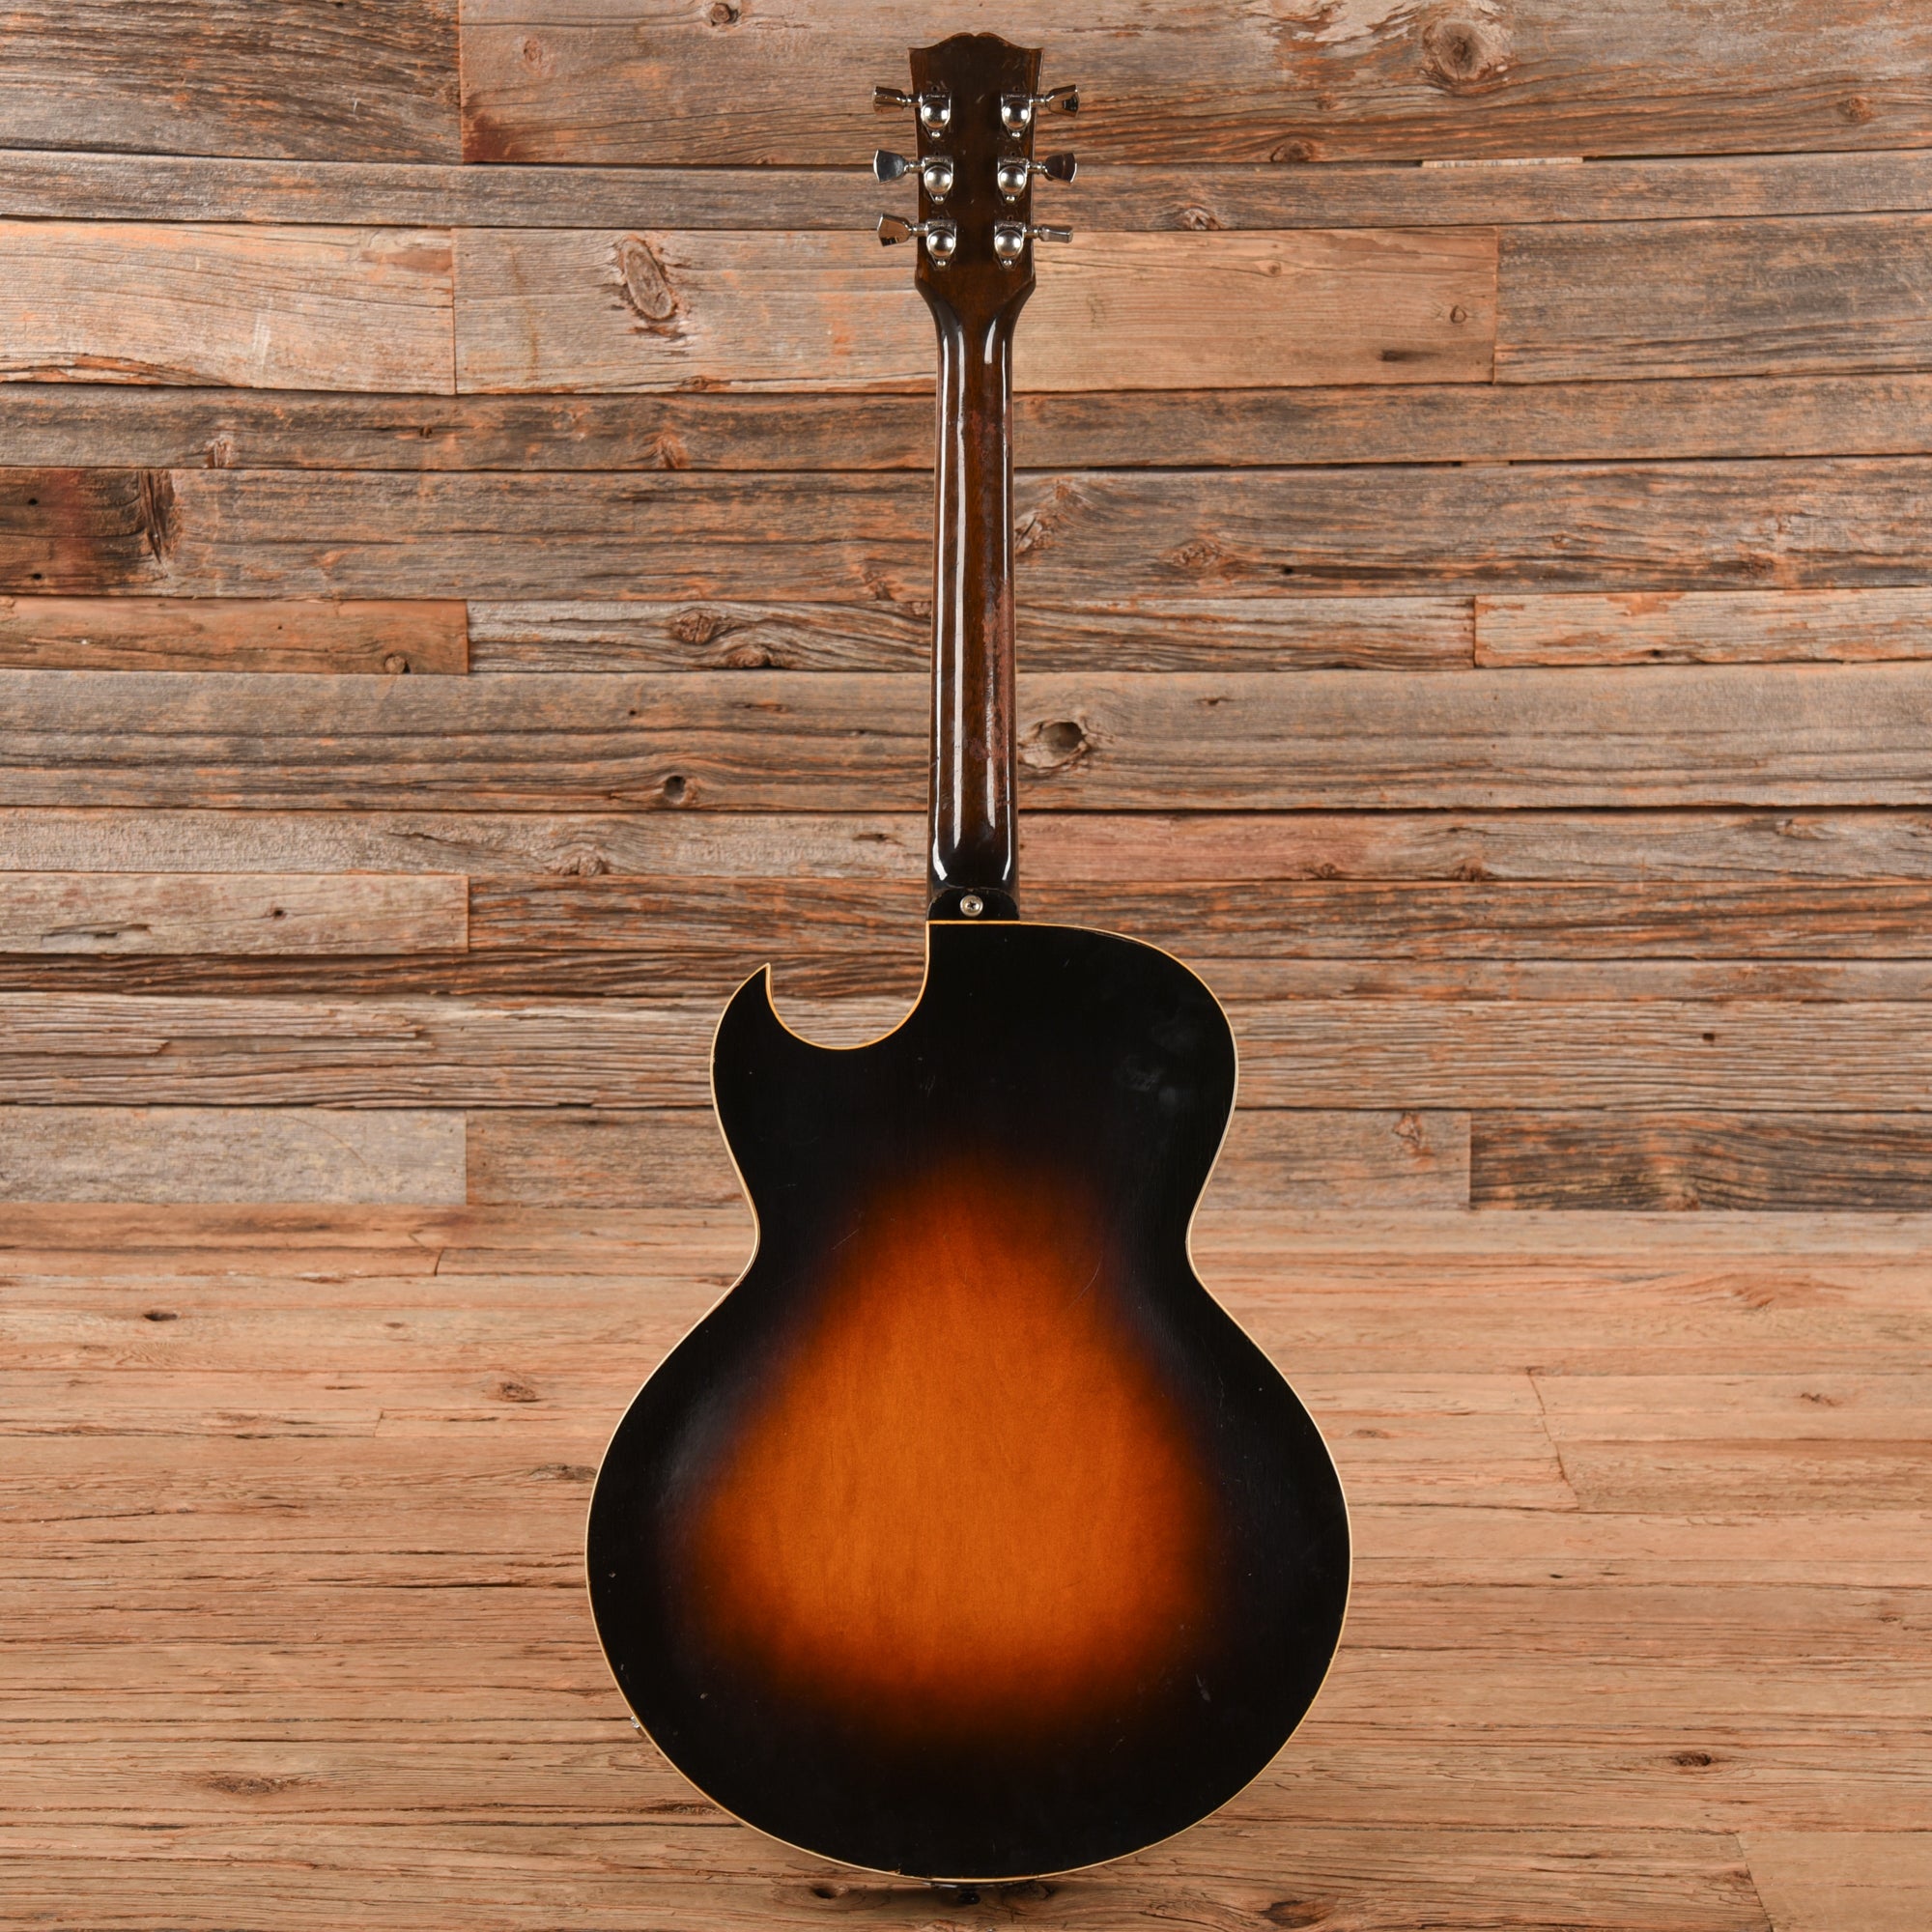 Gibson ES-175 Sunburst 1953